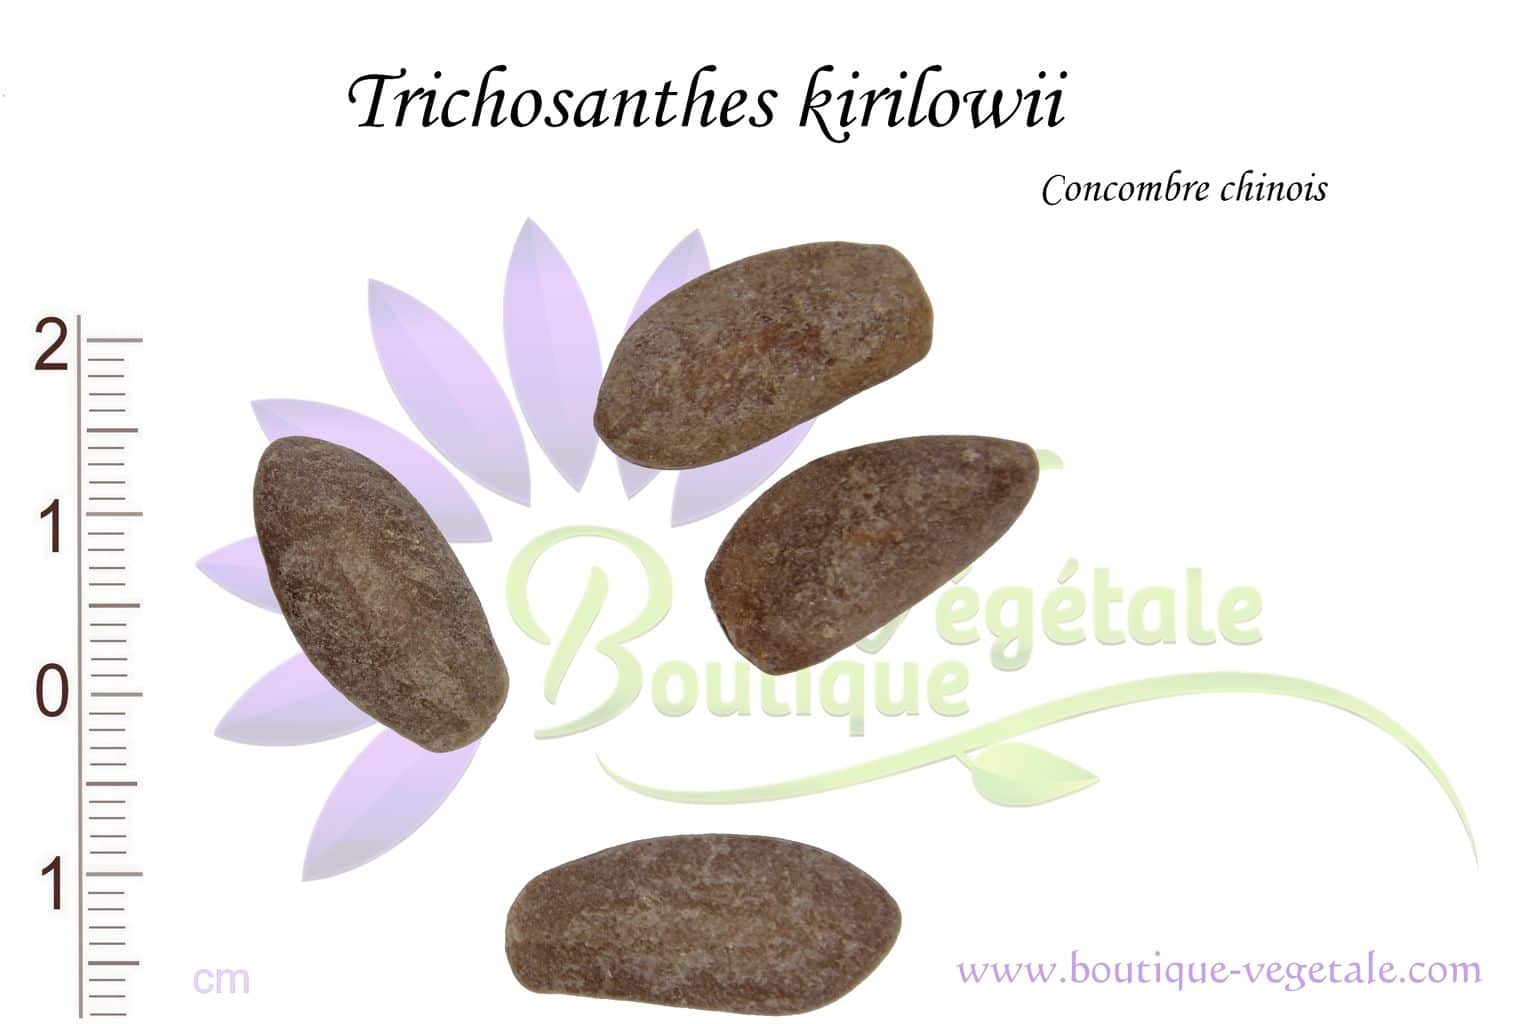 Graines de Trichosanthes kirilowii, Semences de Trichosanthes kirilowii ou Concombre chinois